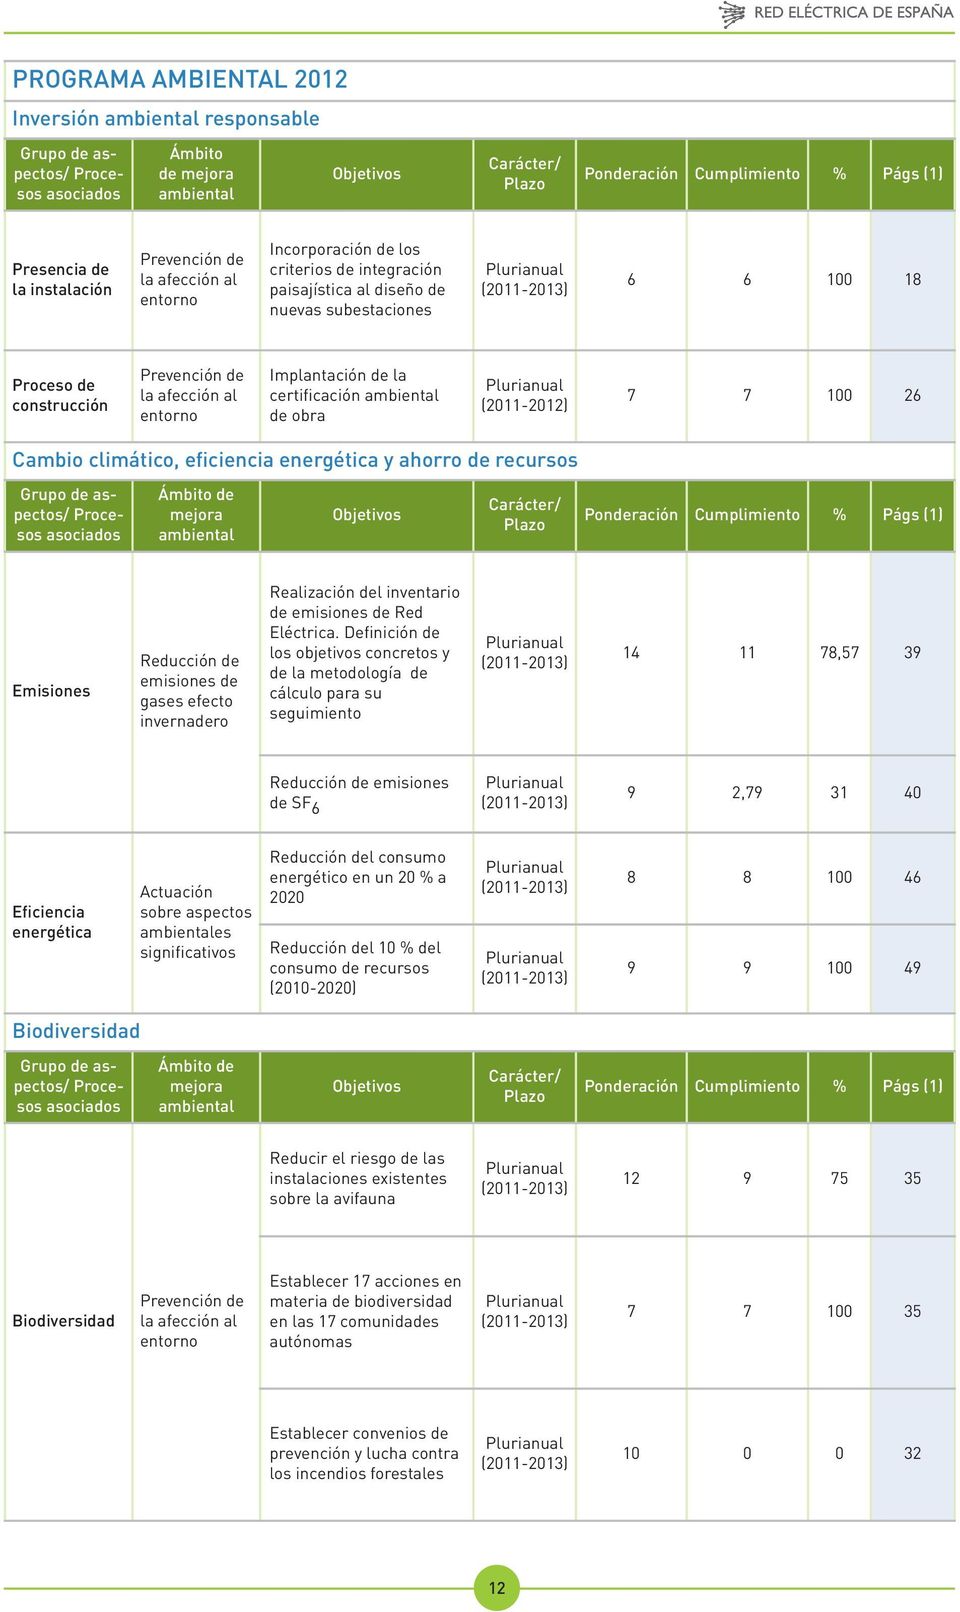 Prevención de la afección al entorno Implantación de la certificación ambiental de obra Plurianual (2011-2012) 7 7 100 26 Cambio climático, eficiencia energética y ahorro de recursos Grupo de